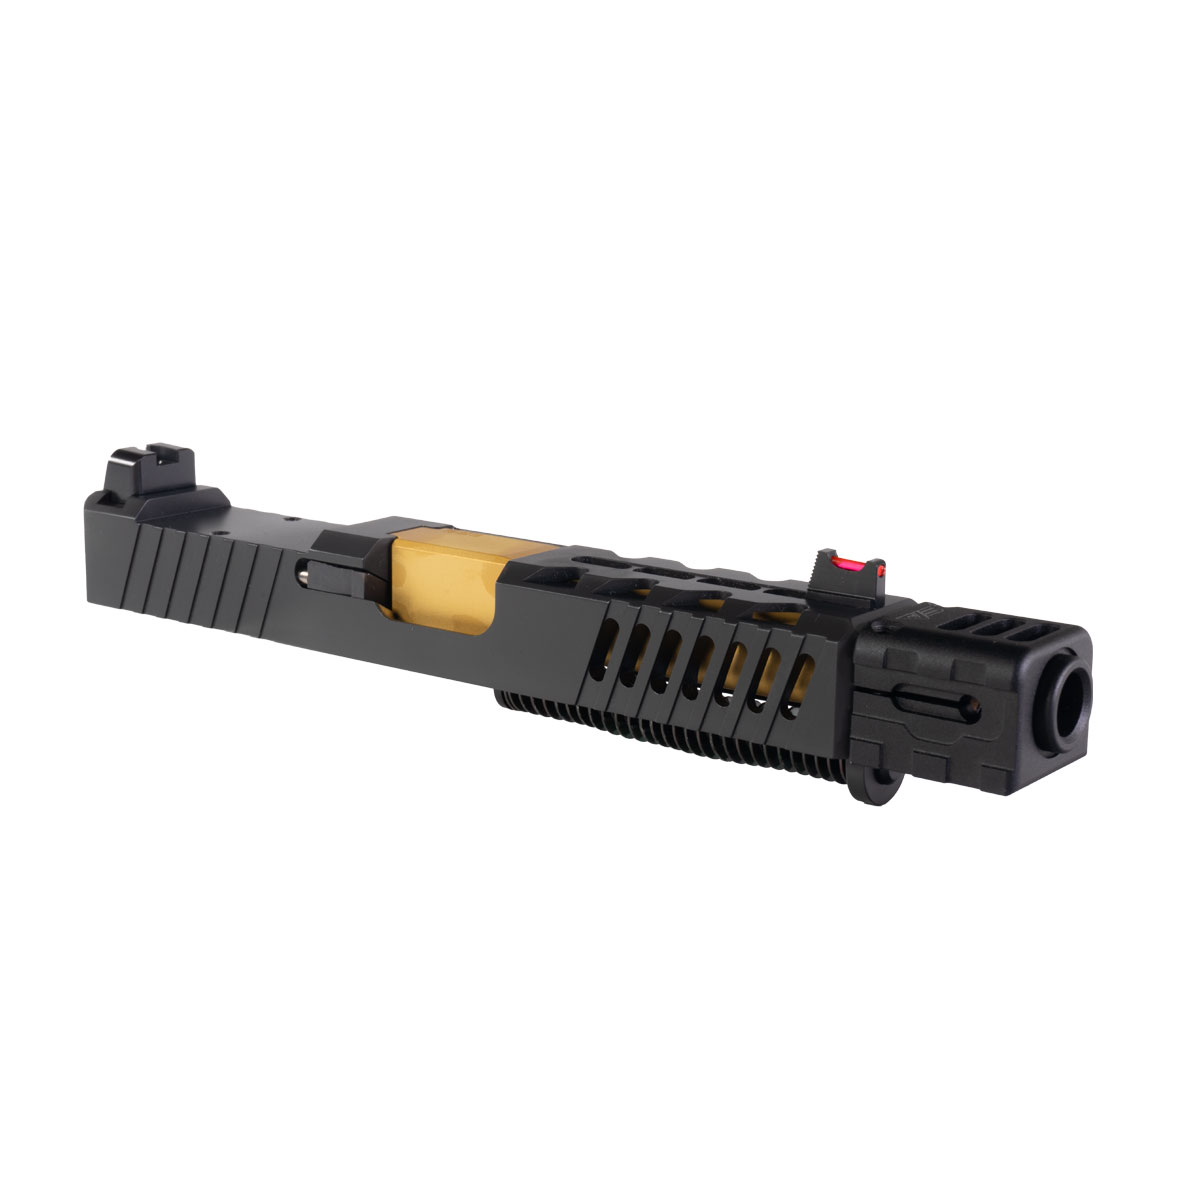 DD 'Beom w/ Sylvan Arms Compensator' 9mm Complete Slide Kit - Glock 19 Gen 1-3 Compatible